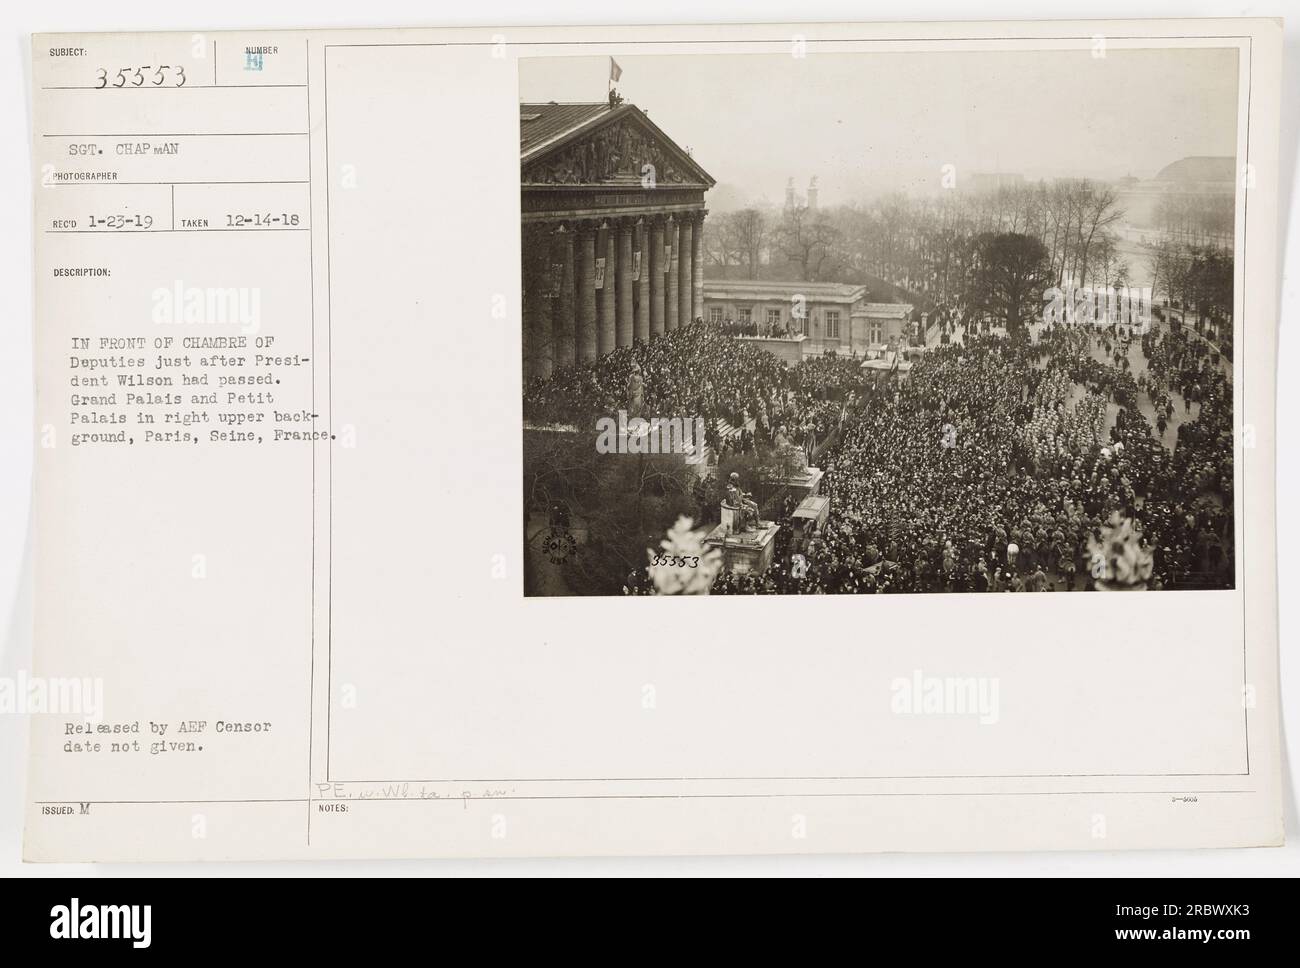 La photographie du sergent Chapman capture la scène à Paris, France, le 14 décembre 1918, devant la Chambre des députés. Le président Wilson venait de passer. Le Grand Palais et le petit Palais sont visibles dans le fond supérieur droit. Cette image a été publiée par le censeur de l'AEP, mais la date de censure n'est pas fournie.' Banque D'Images